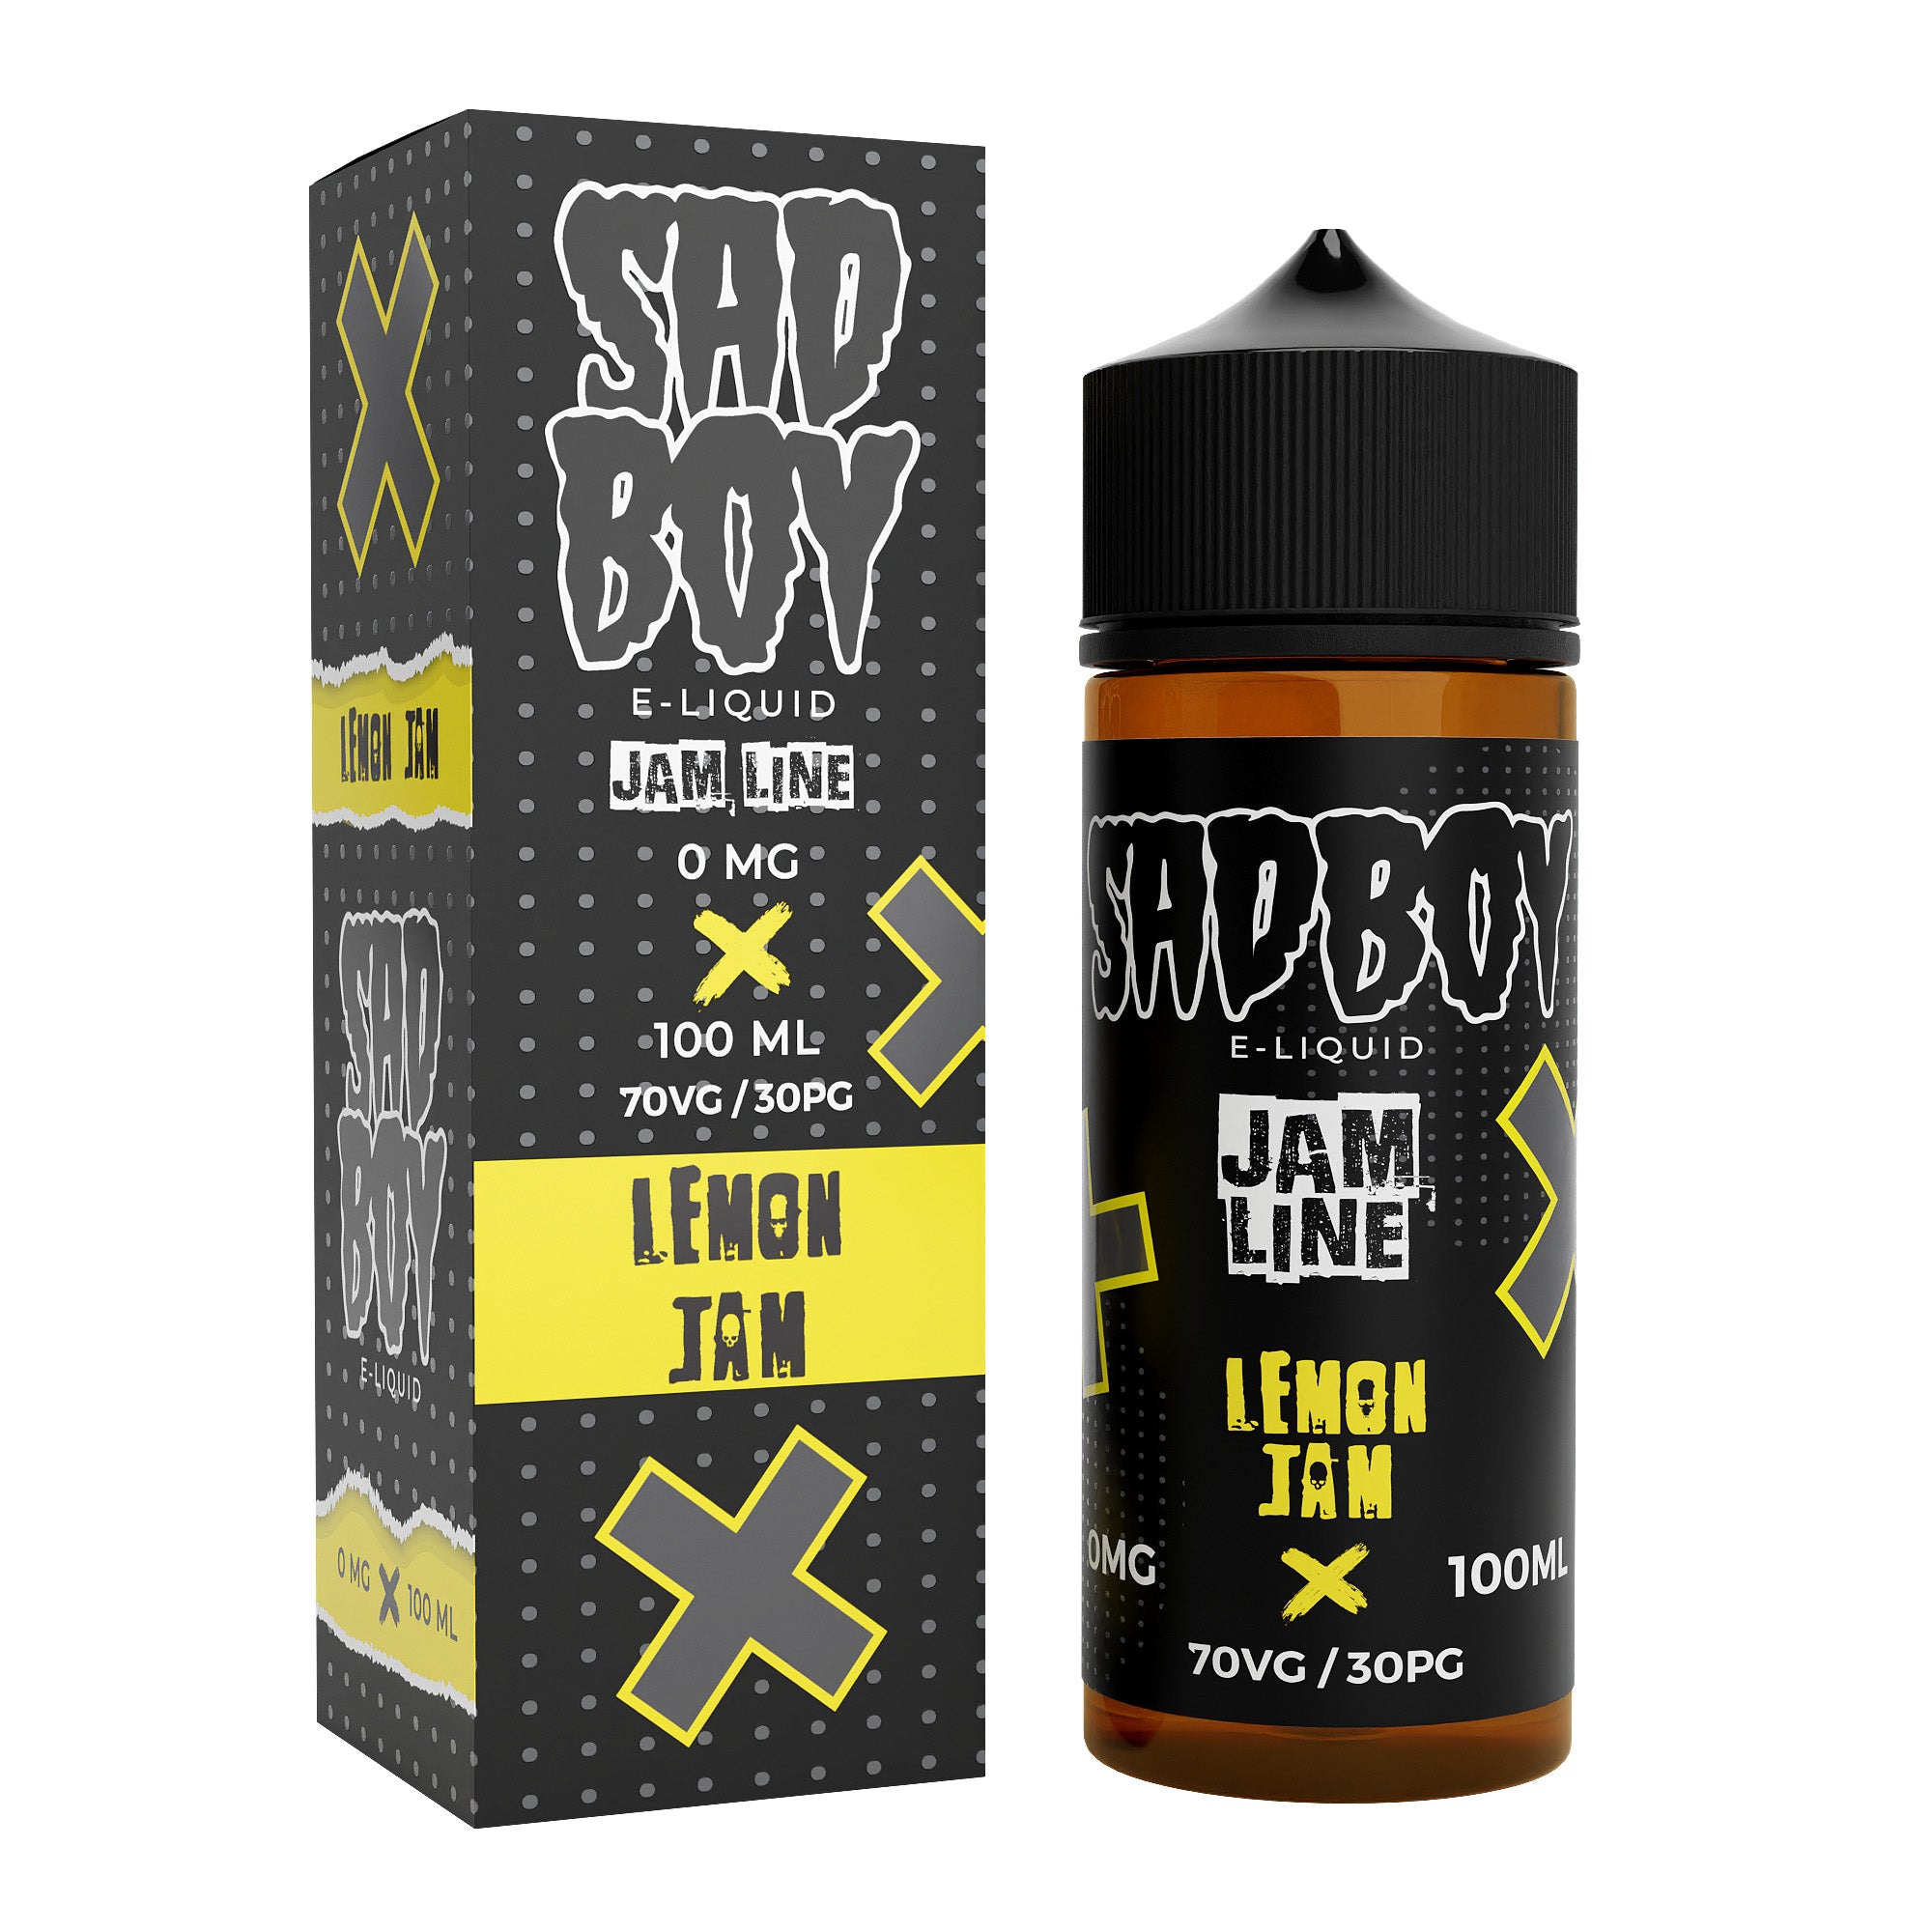 Sadboy Jam Line: Lemon Jam 0mg 100ml Shortfill E-Liquid